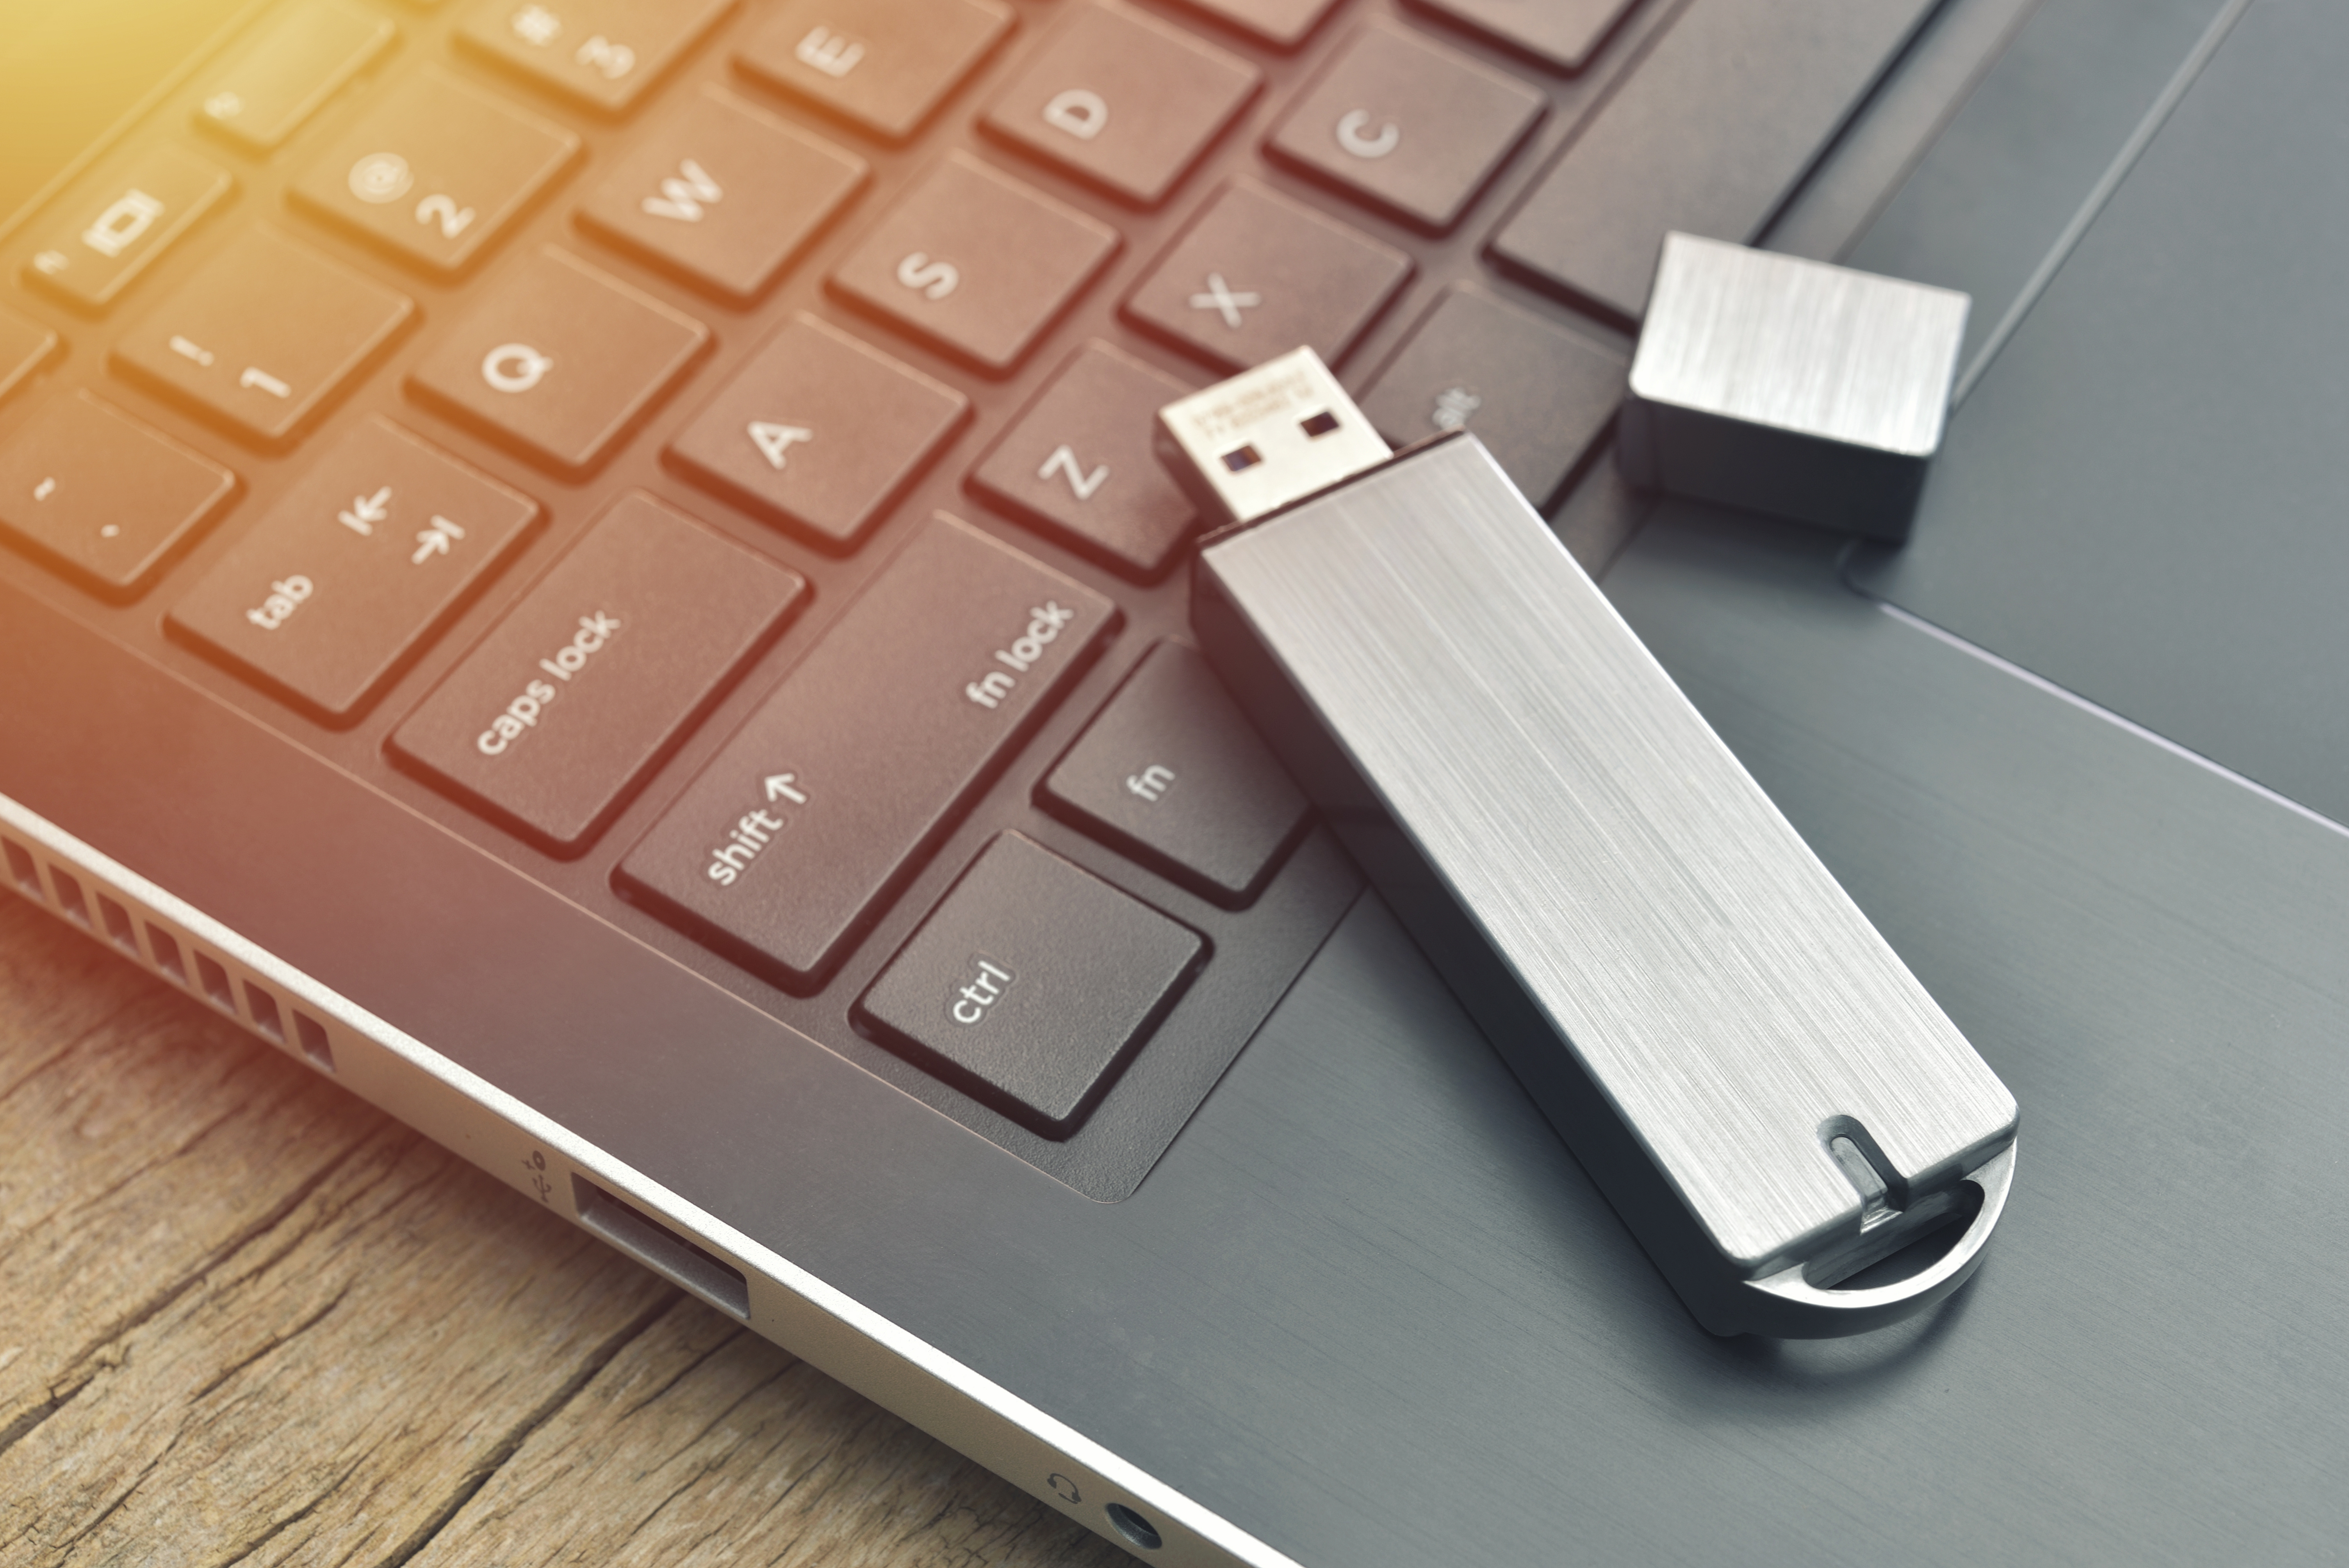 Protégez vos données facilement grâce à notre sélection des meilleures clés USB pas chères © Daniel CHETRONI, Adobe Stock